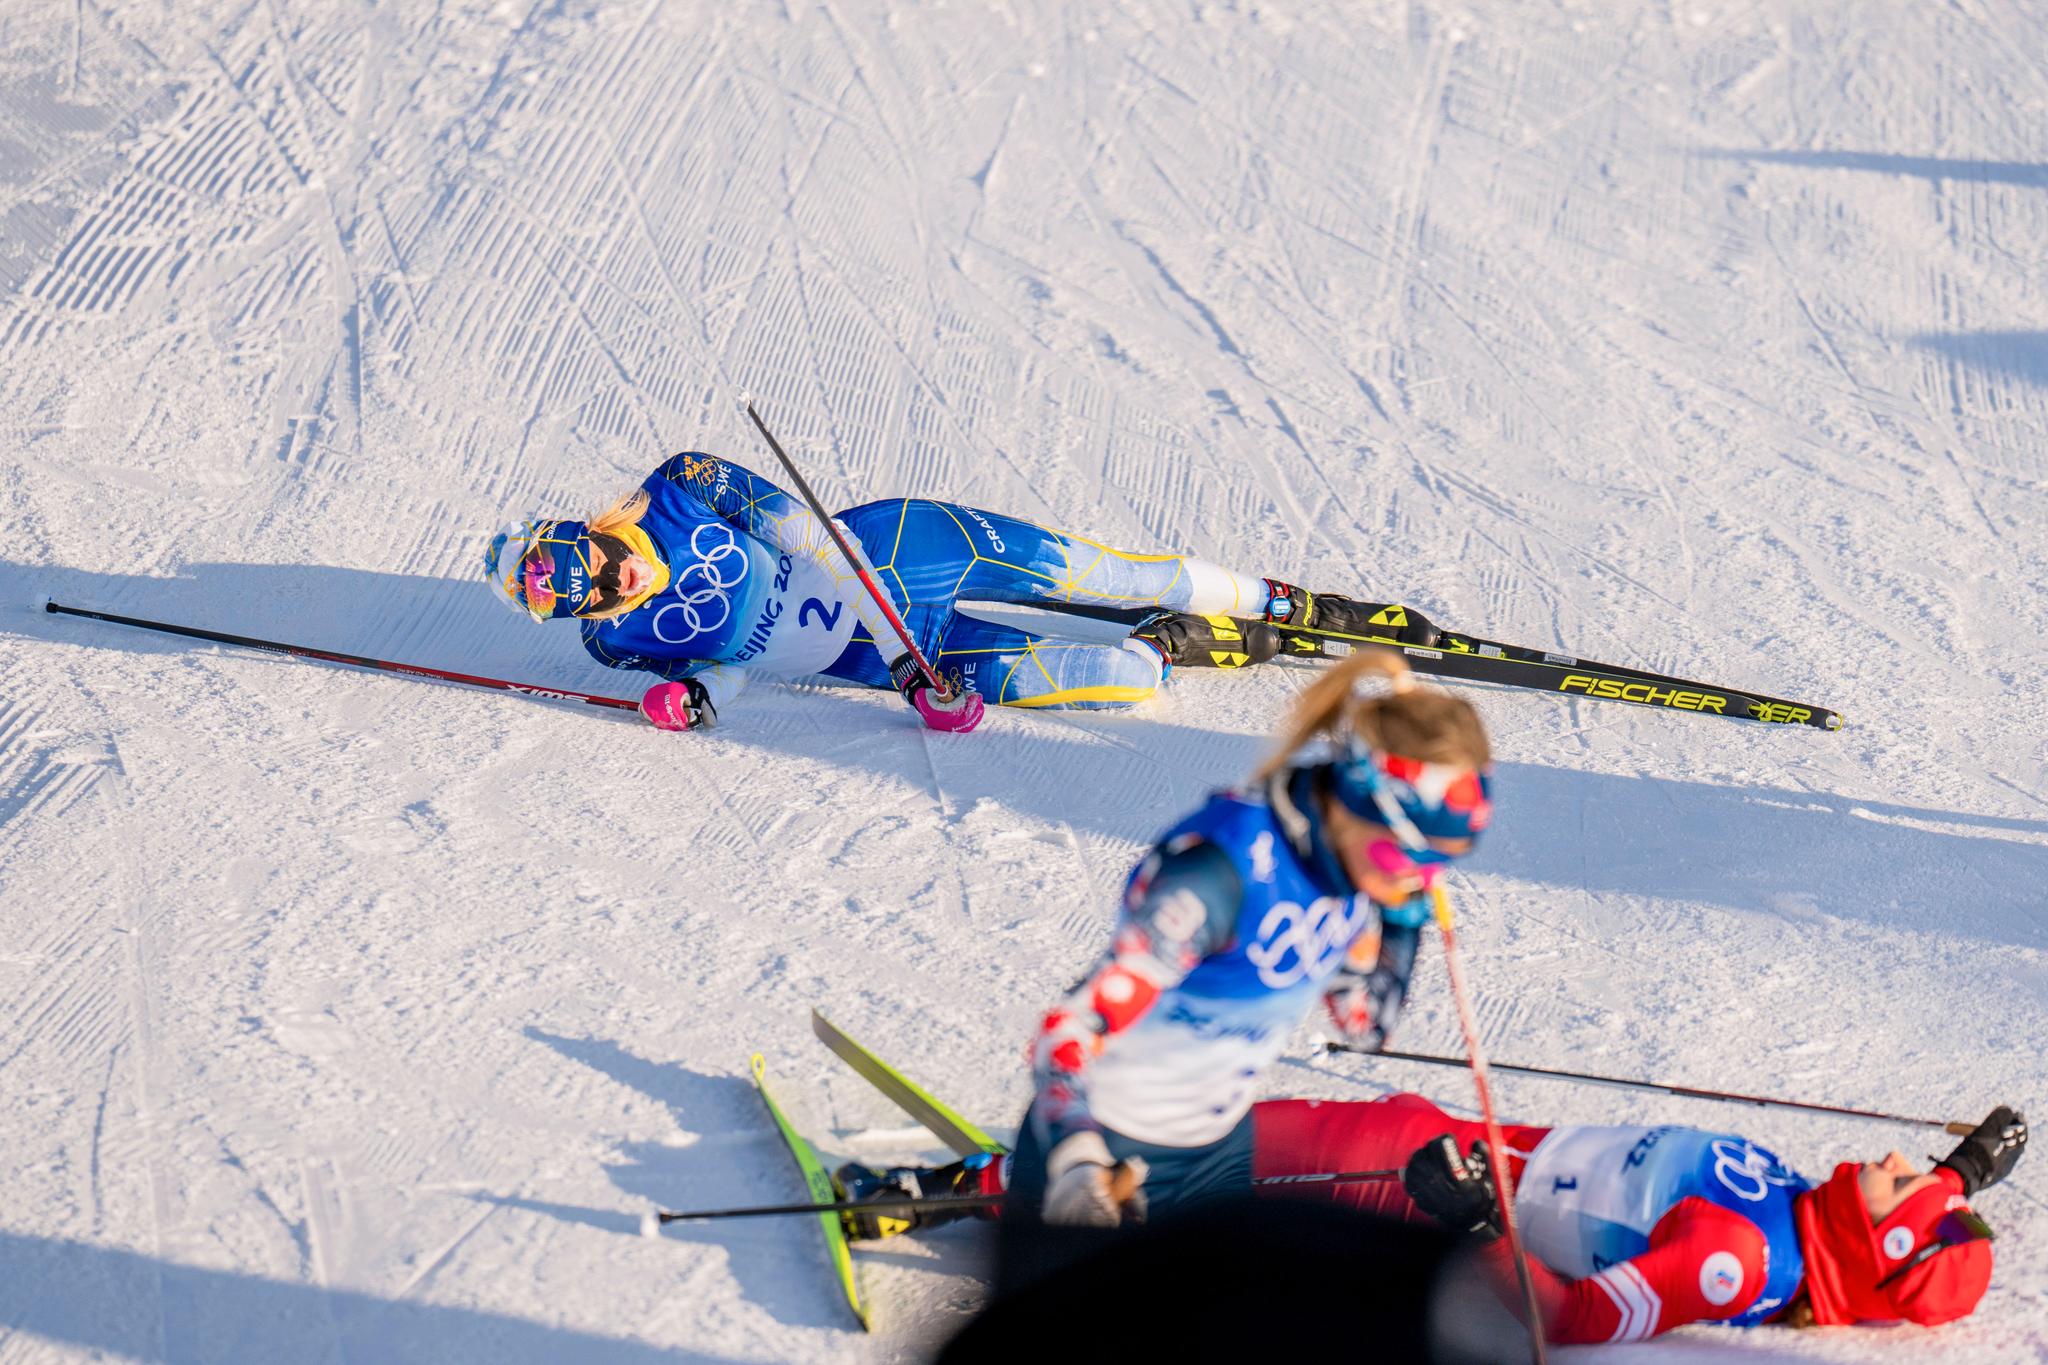 UTSLITT: Frida Karlsson var så sliten at hun besvimte etter 15 kilometer fellesstart med skibytte. Therese Johaug vant, Natalja Neprjajeva (liggende nede til høyre) tok sølv.